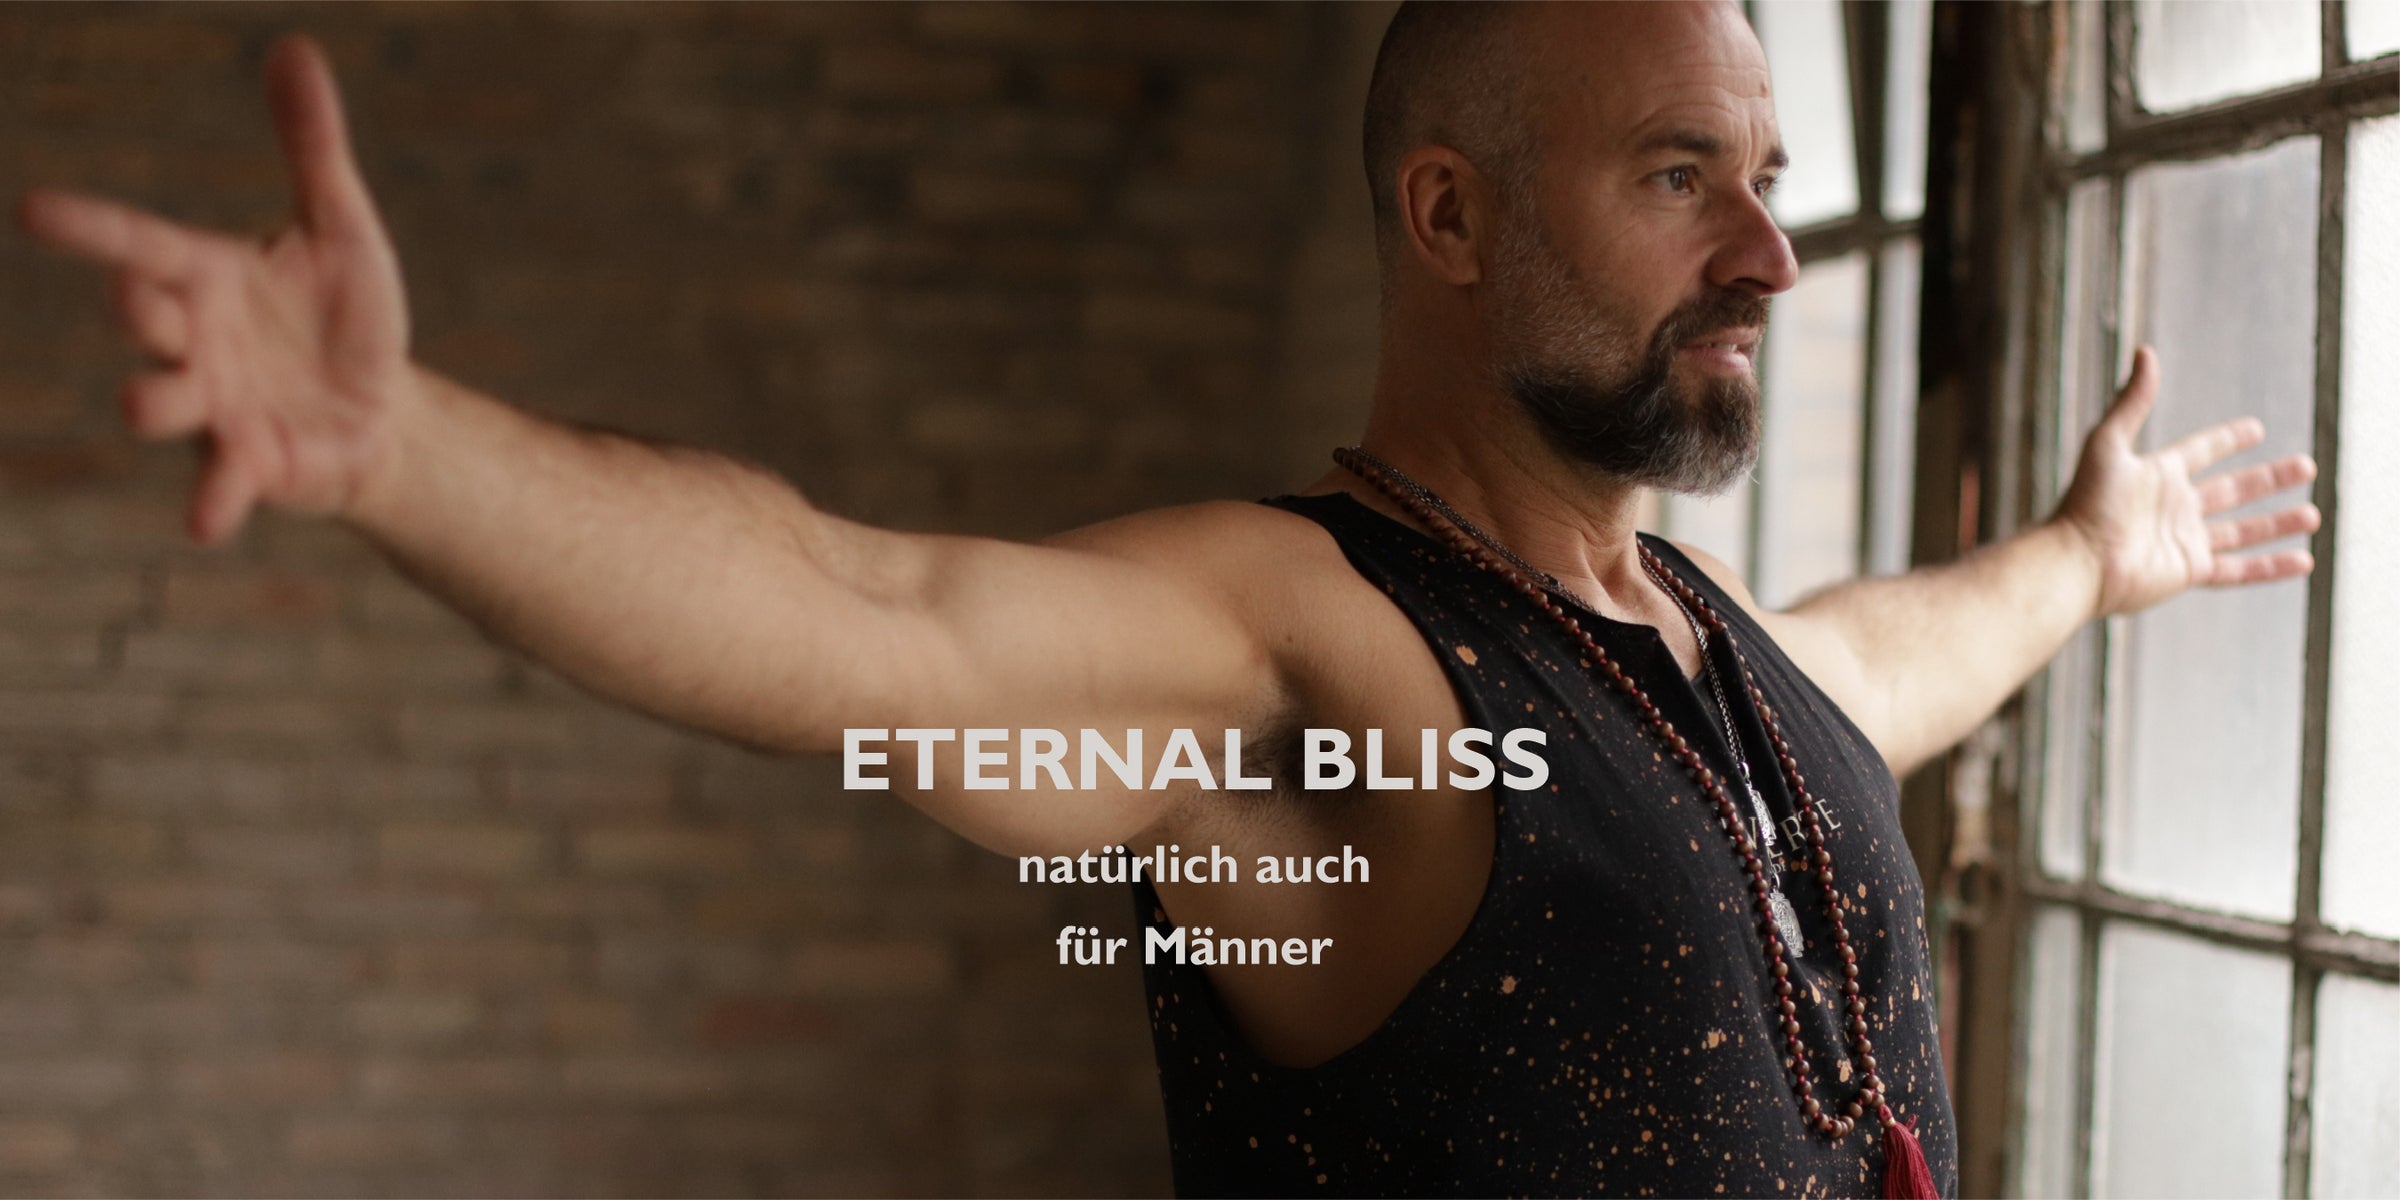 Spirituelle Männer Schmuck Kollektion: Der Yoga Lehrer Valentin trägt ausgesuchte männliche Schmuckstücke  | Thema Meditation